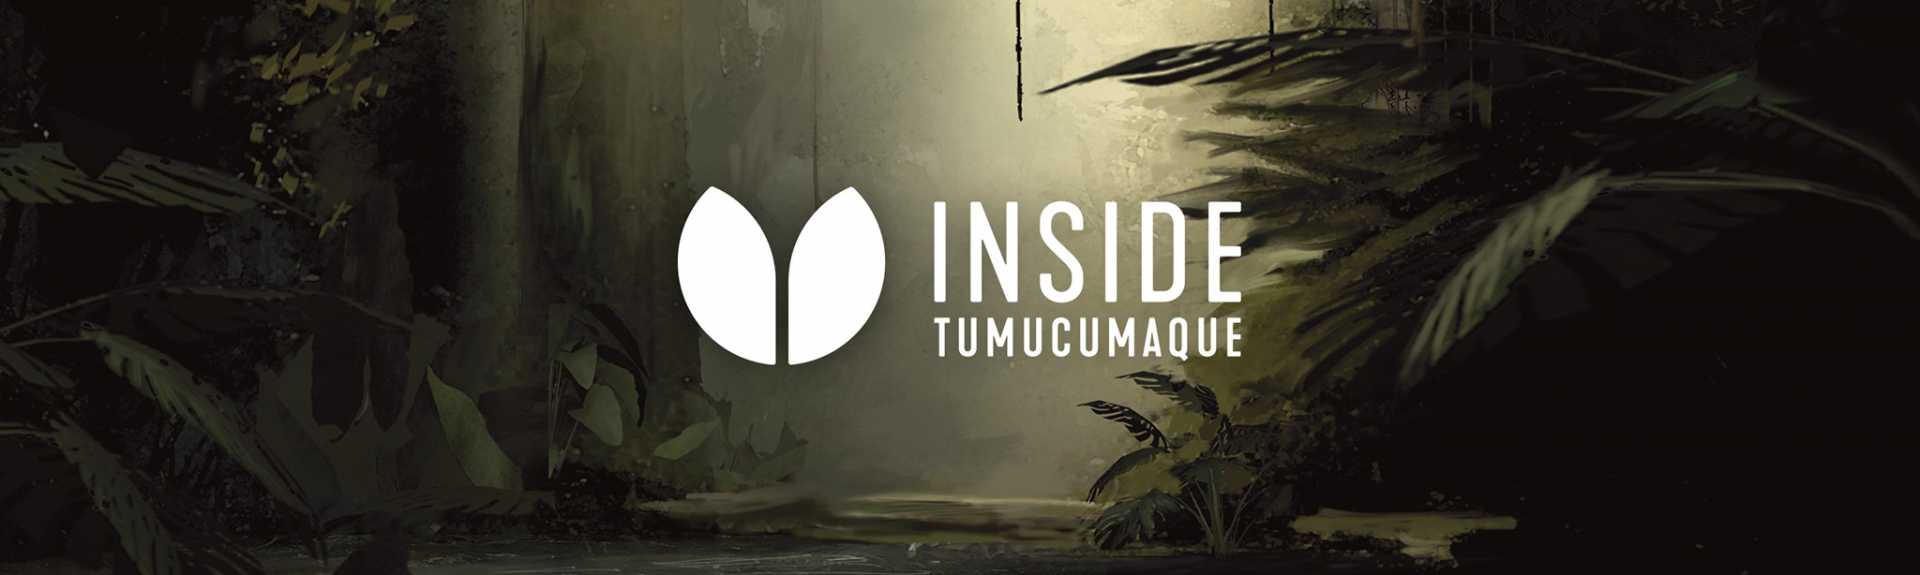 Inside Tumucumaque